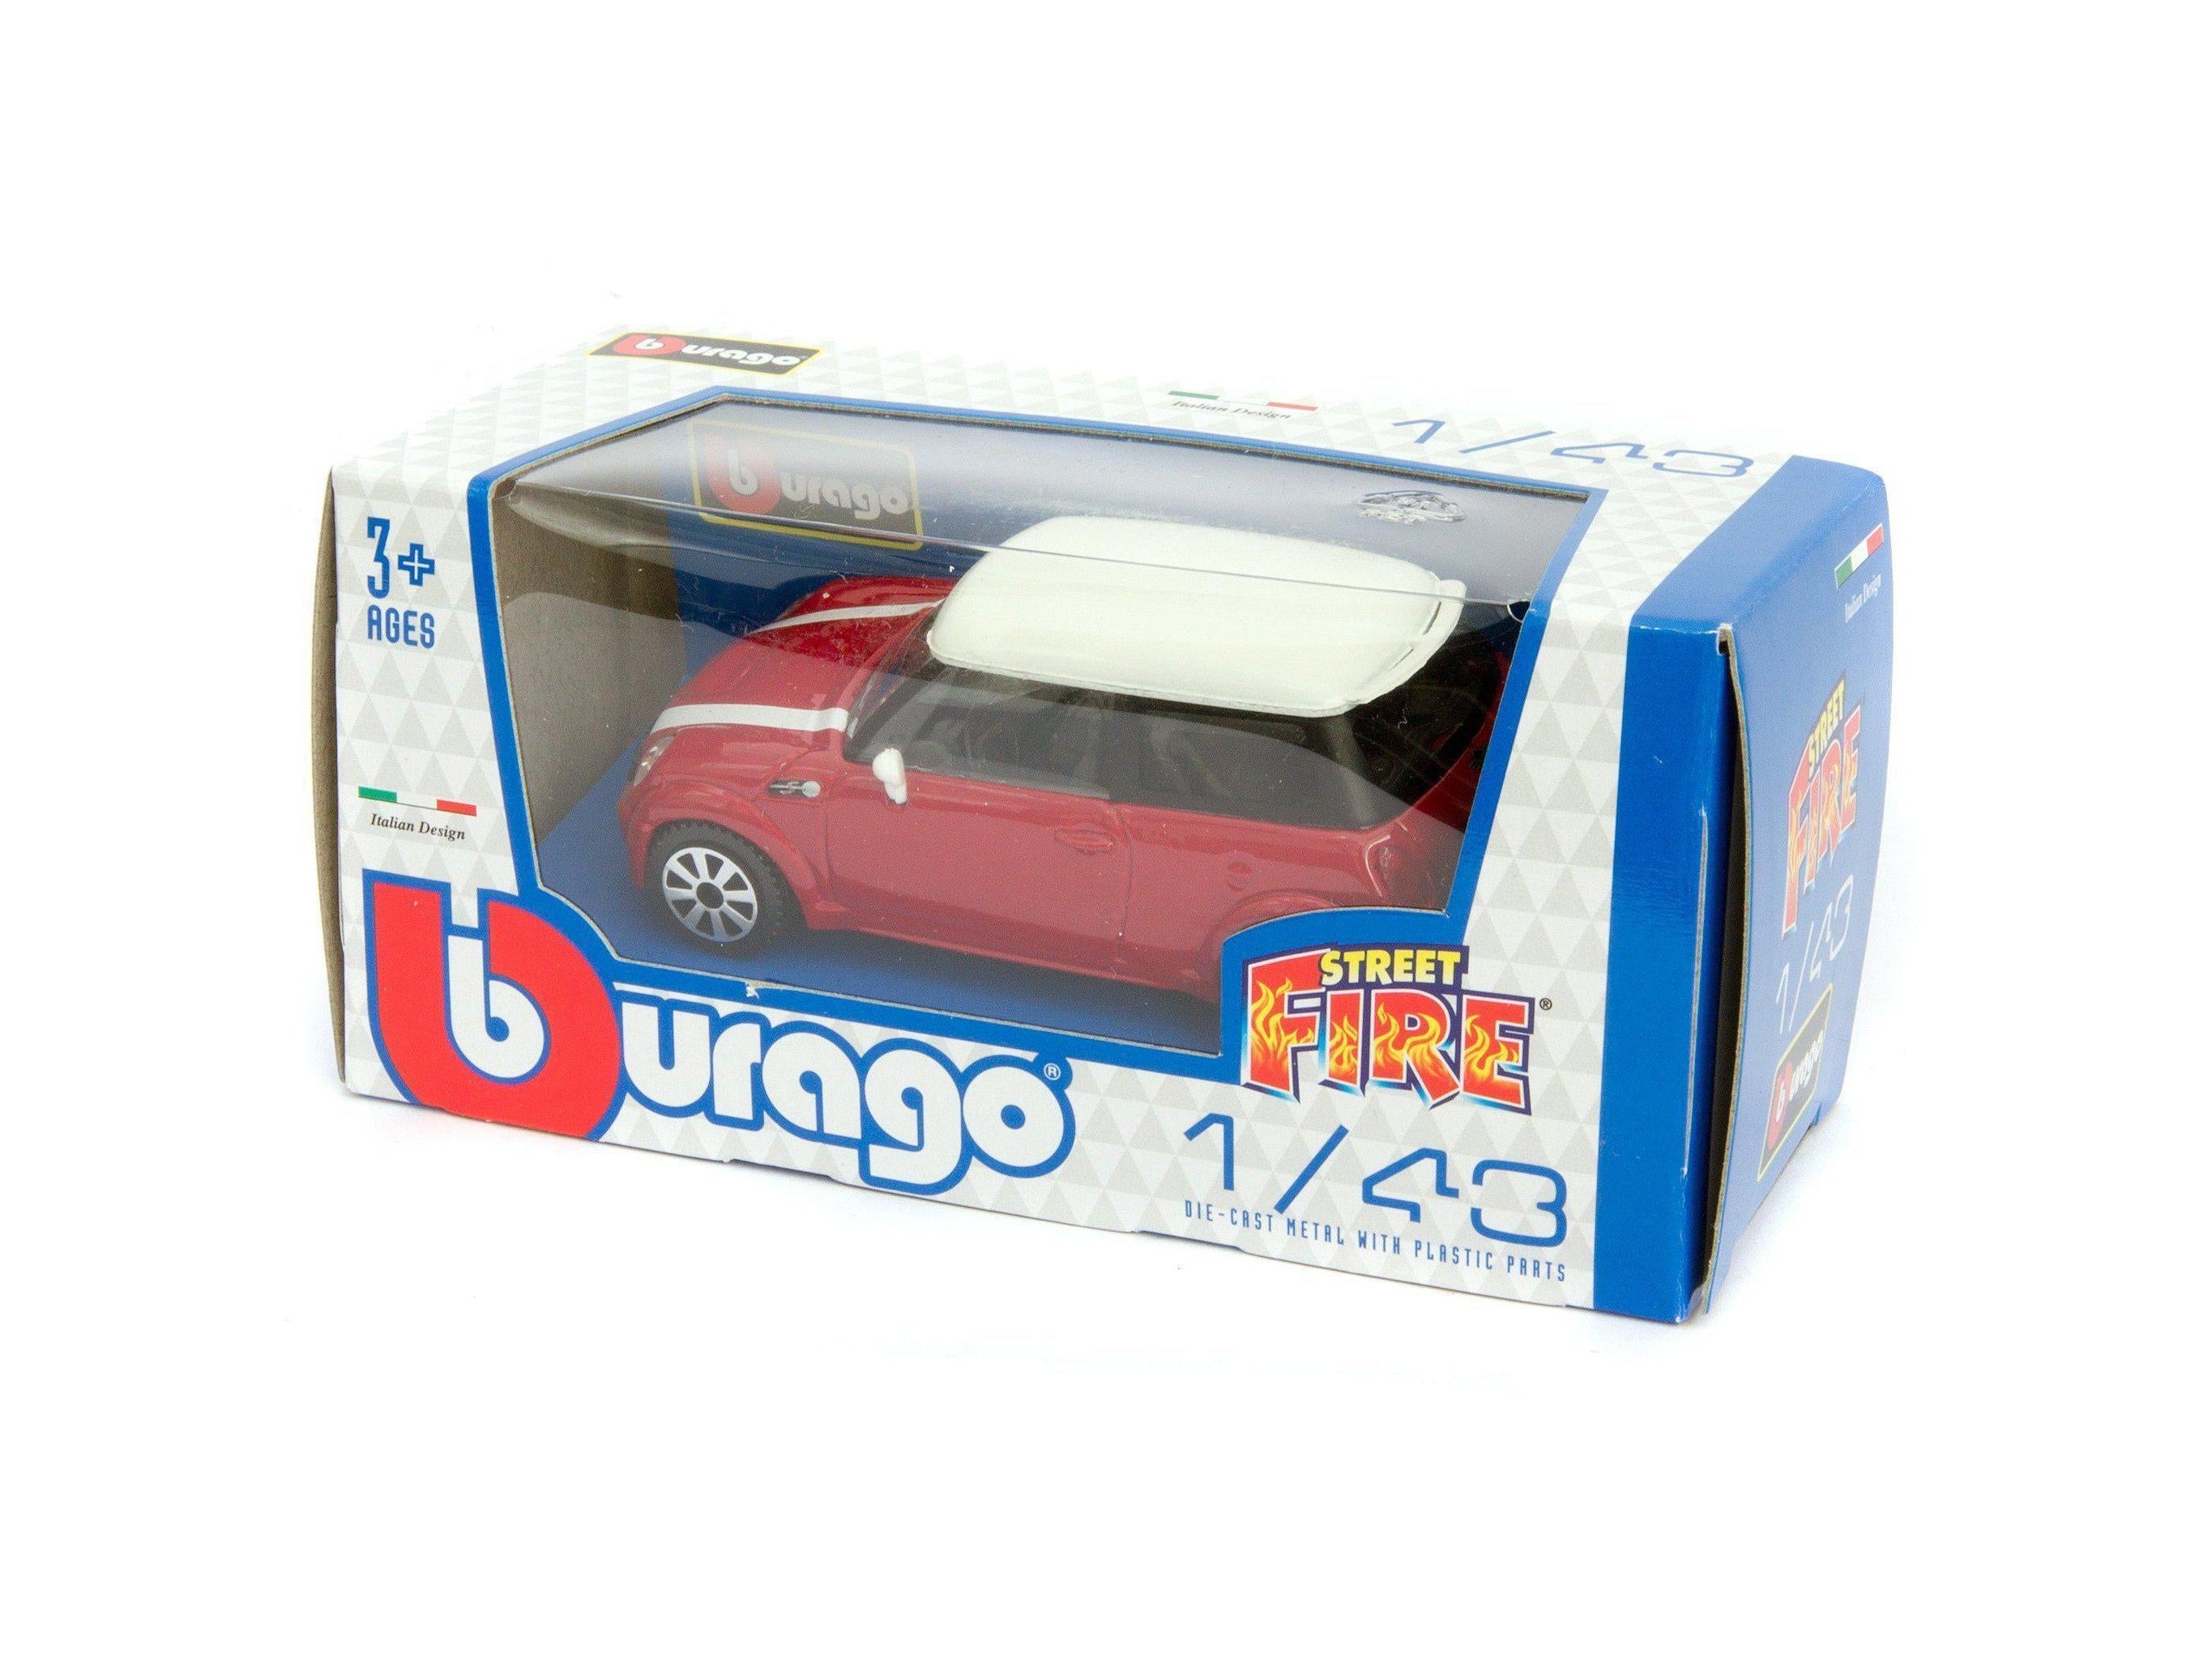 MINI Cooper S Diecast Toy Car red - 1:43 Scale-Bburago-Diecast Model Centre